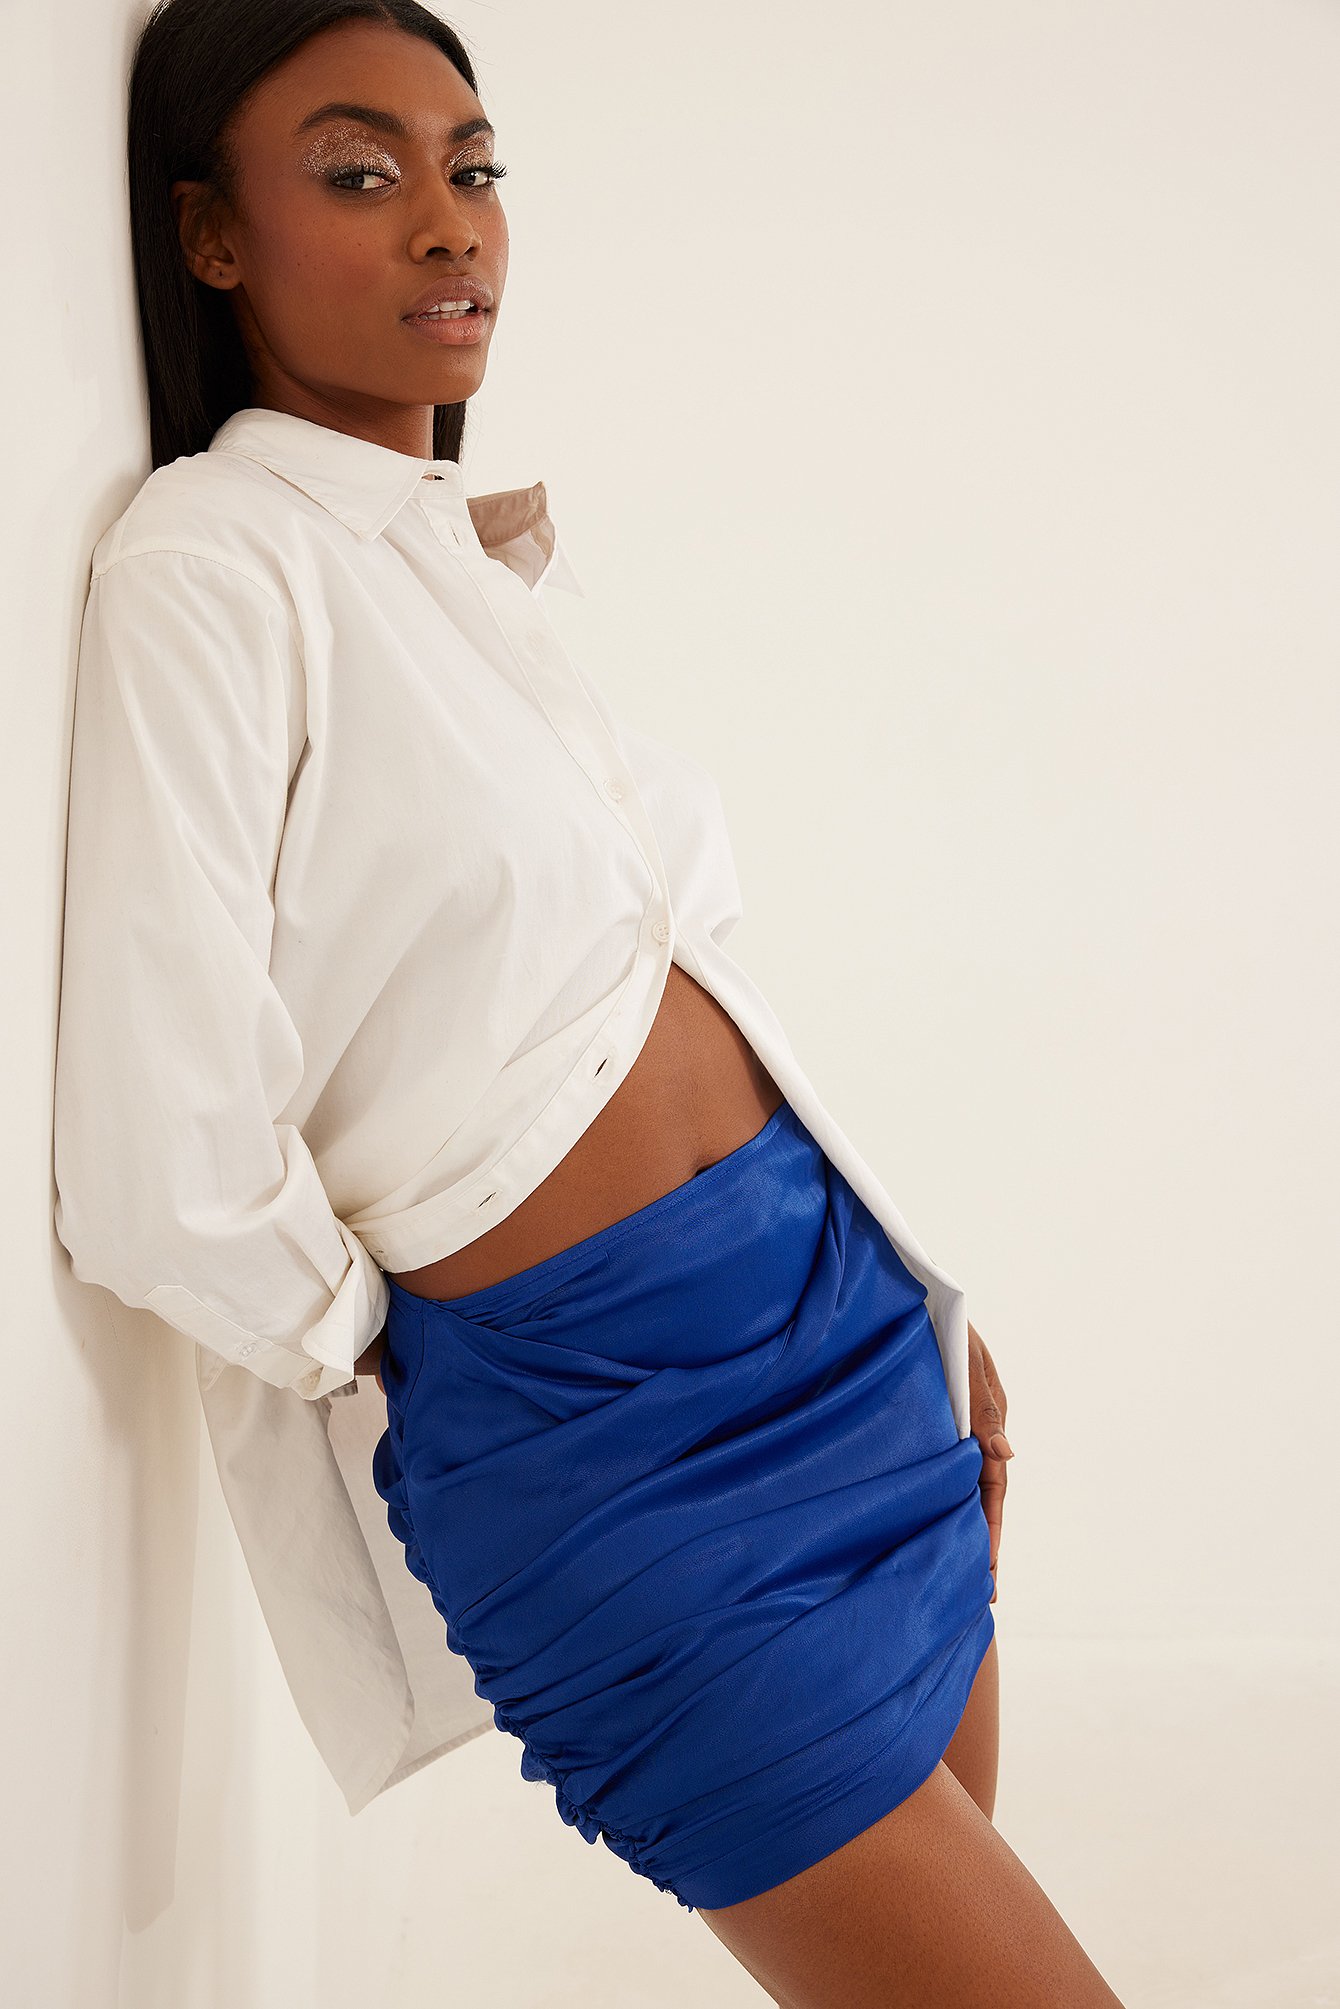 Blue Mini rok met gedrapeerde voorkant